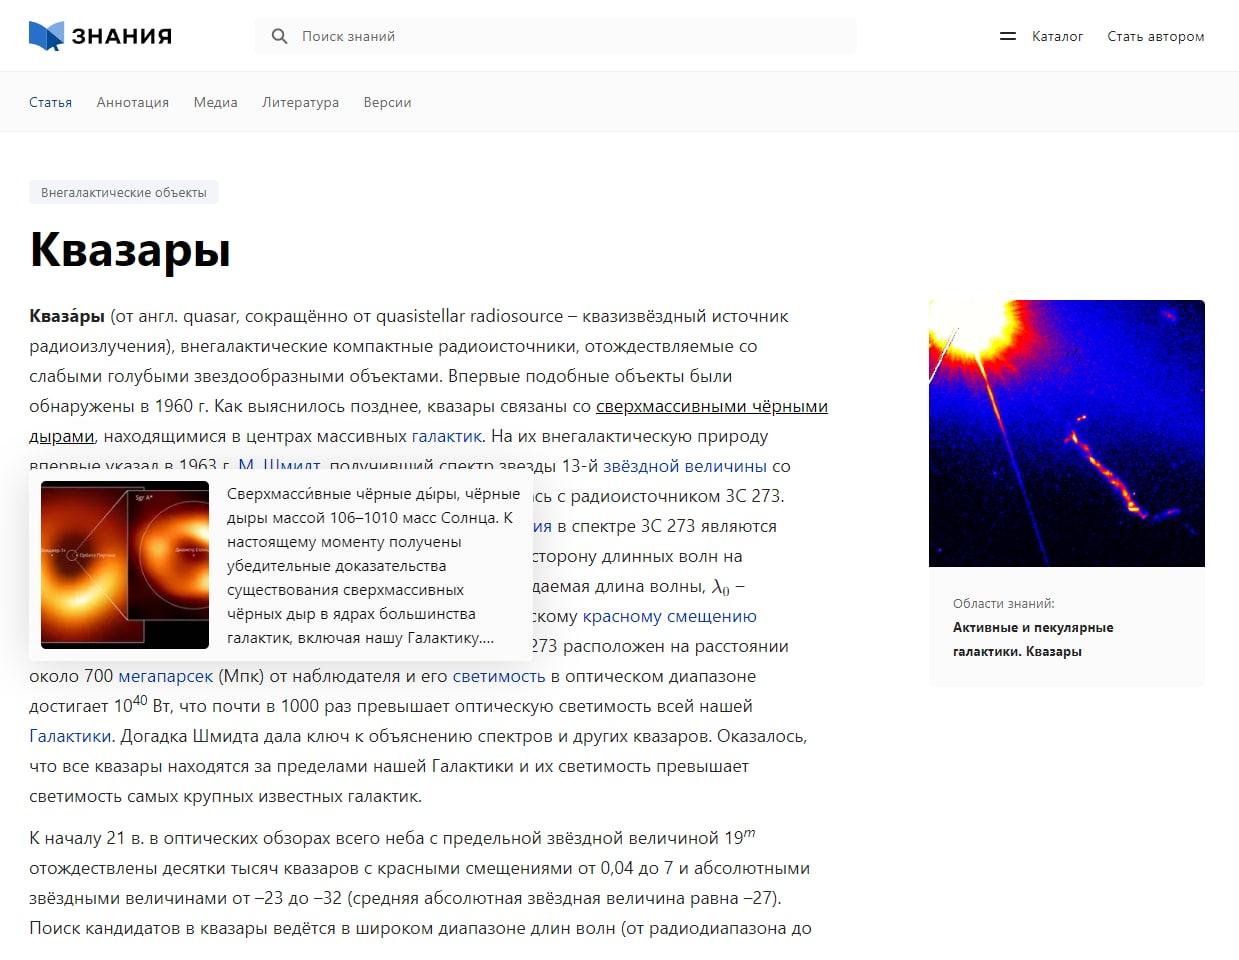 Российский аналог "Википедии", портал "Знания", будет запущен в первом квартале 2023 года